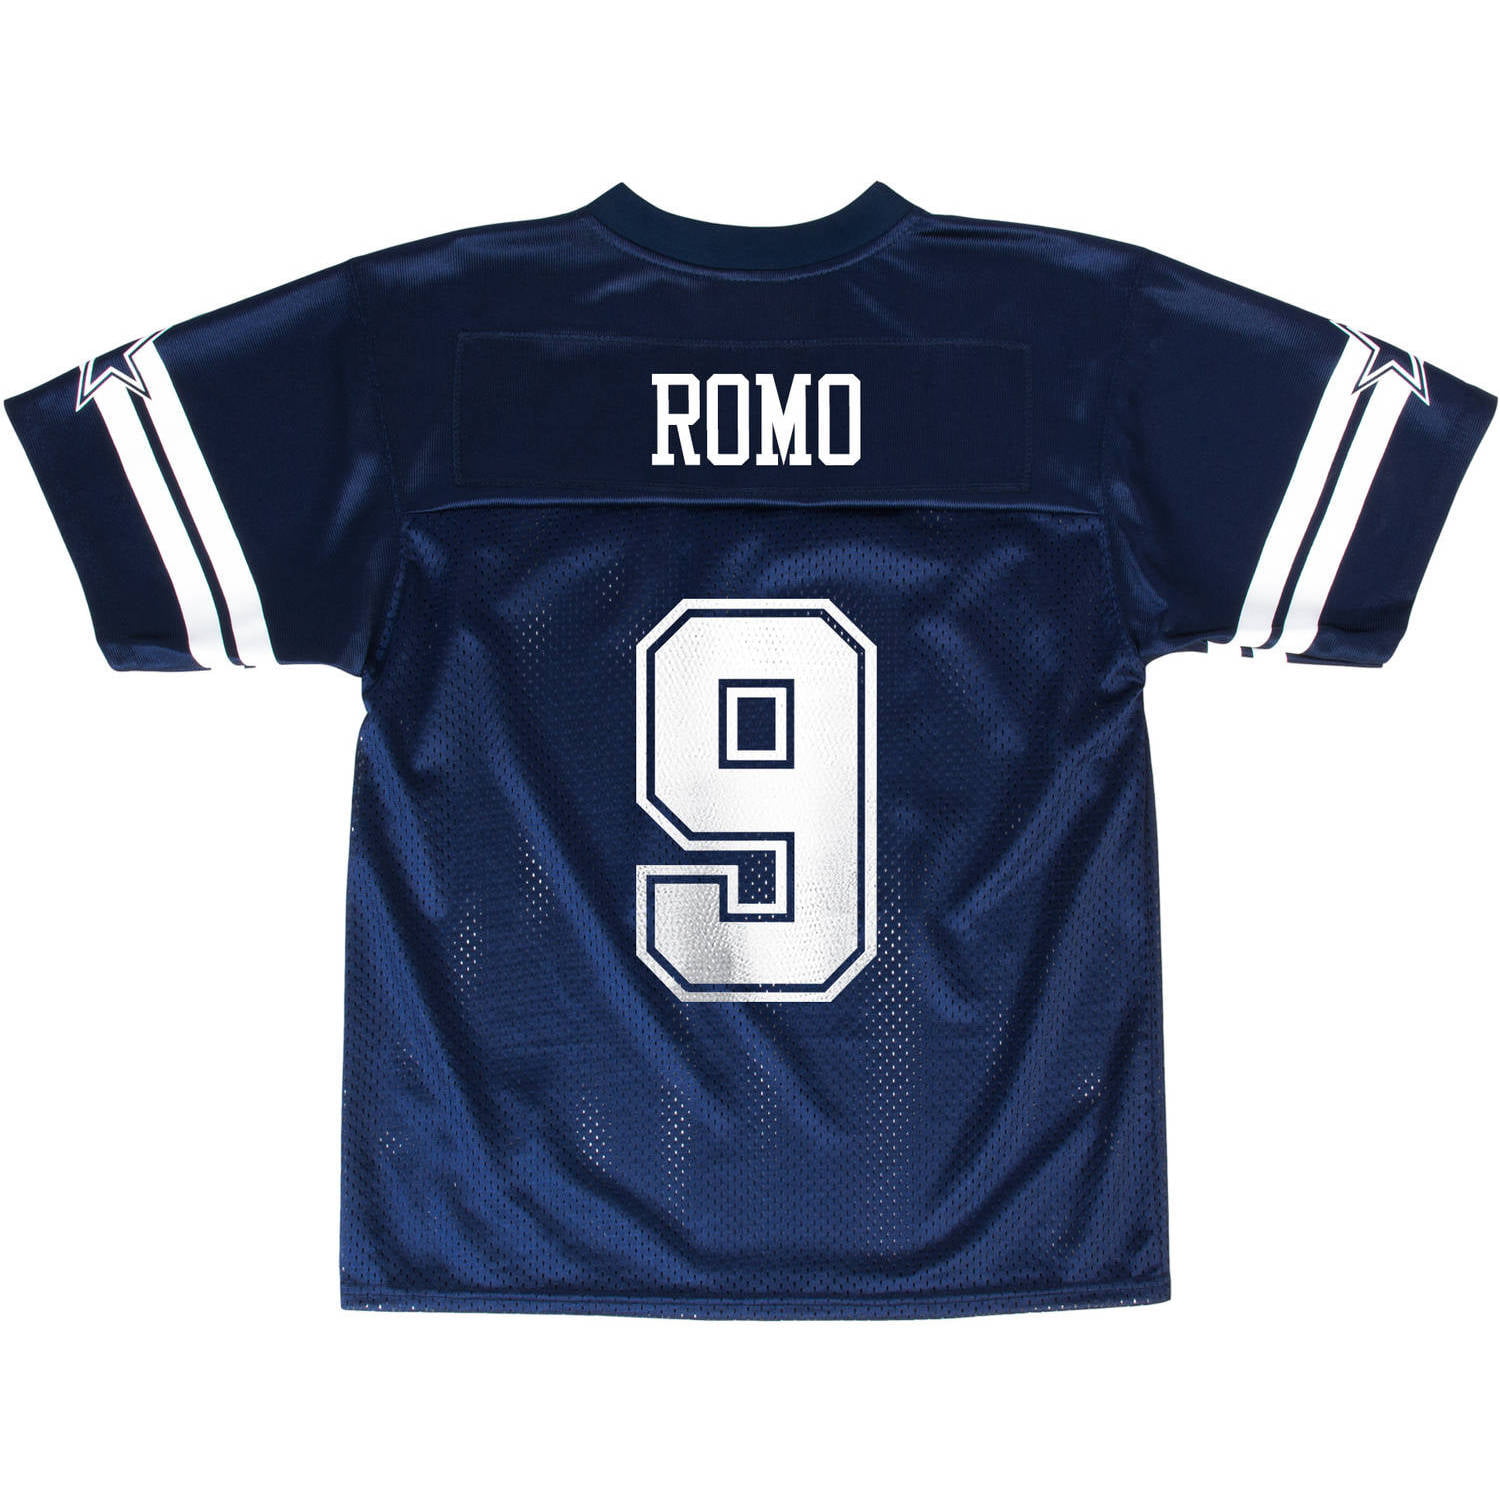 Dallas Cowboys Tony Romo Youth Jersey 